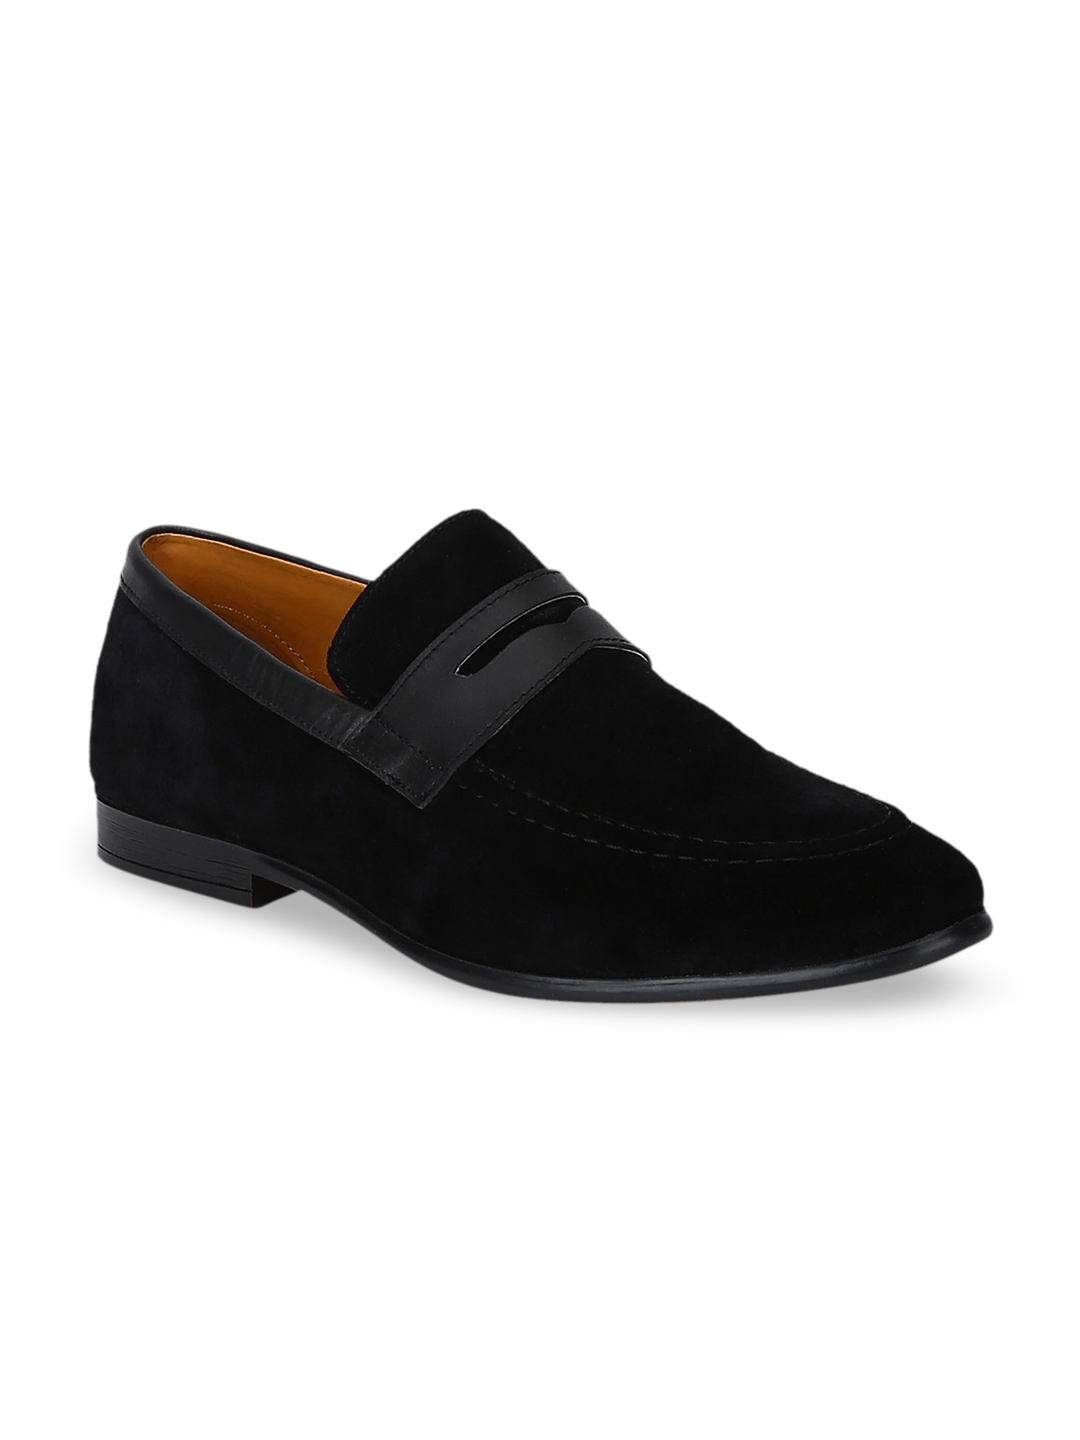 Buy DEL MONDO Men Black Suede Loafers - Casual Shoes for Men 10708044 ...